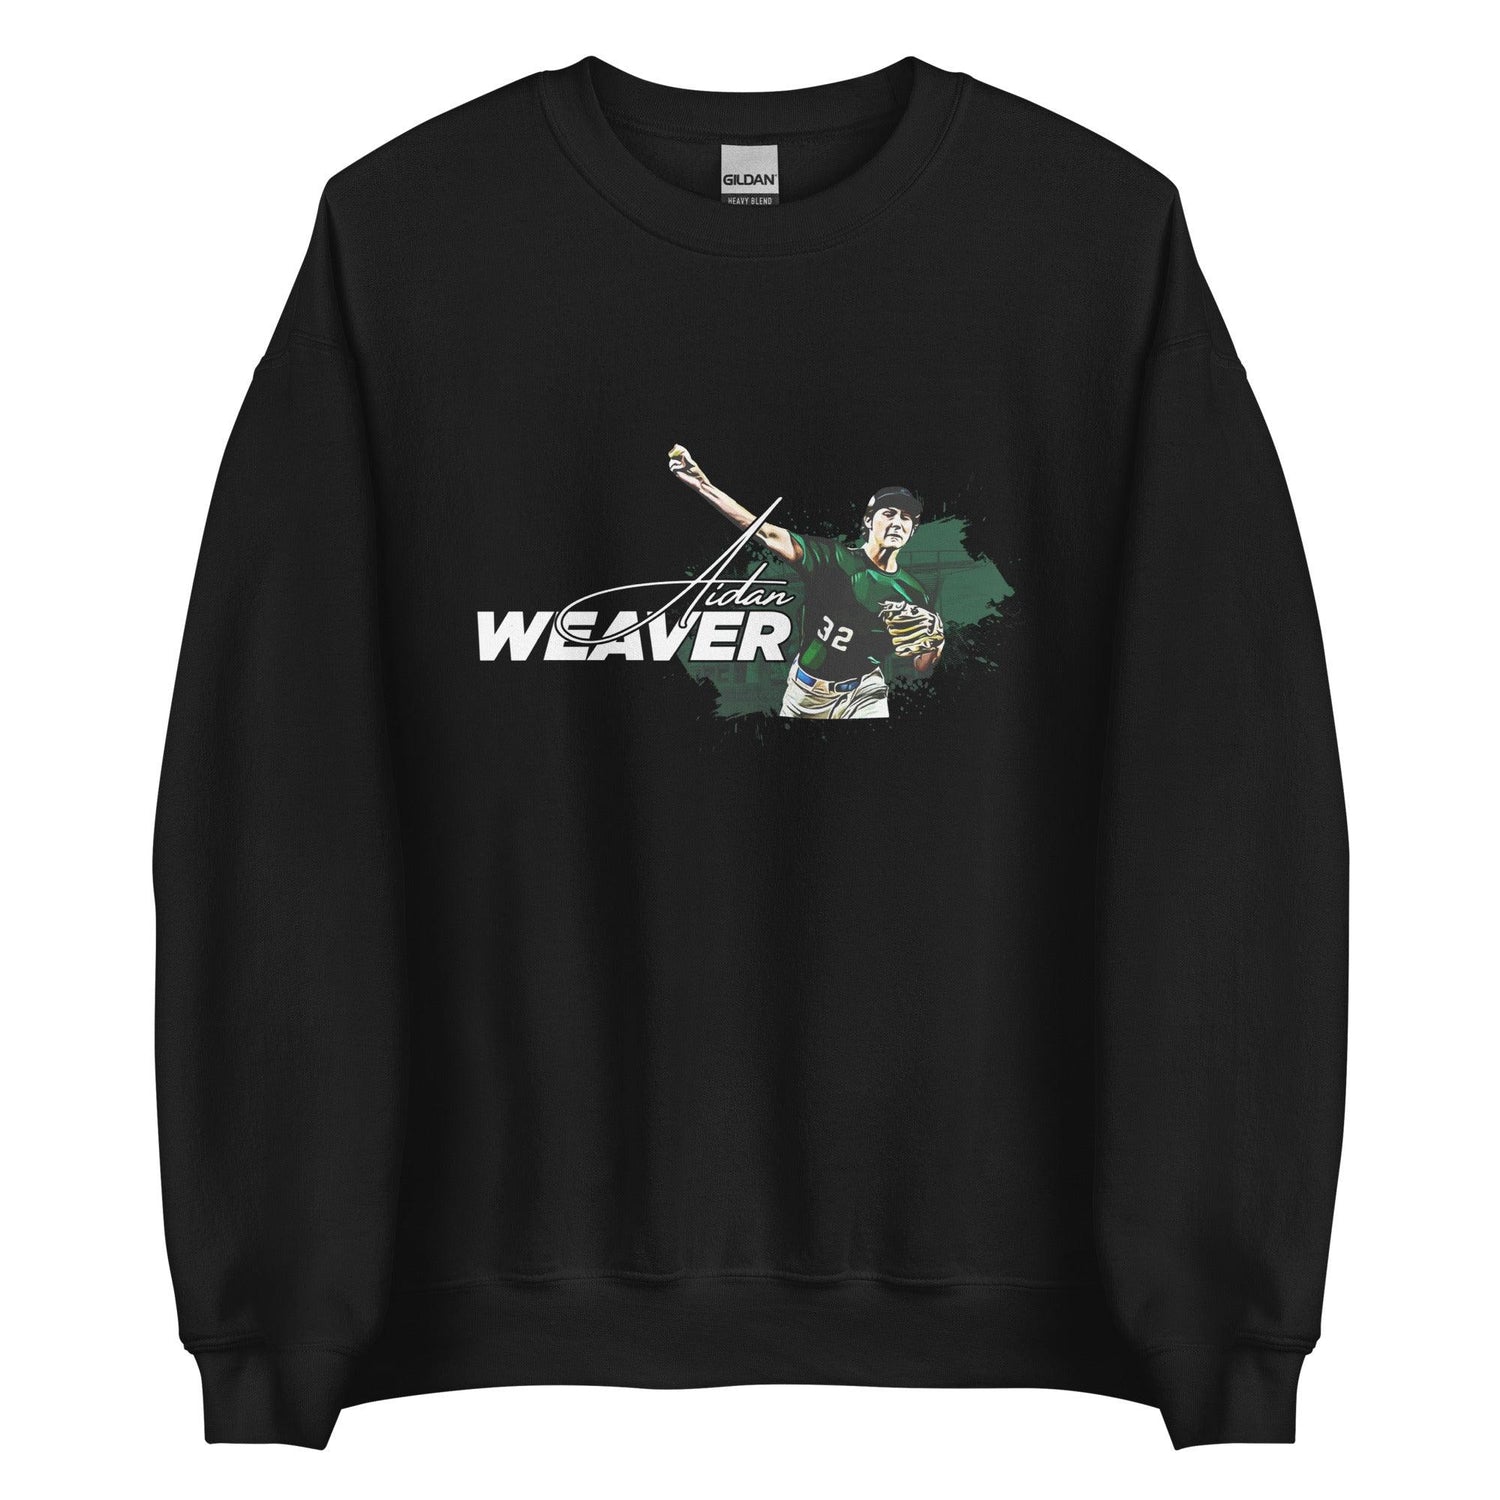 Aidan Weaver “Essential” Sweatshirt - Fan Arch